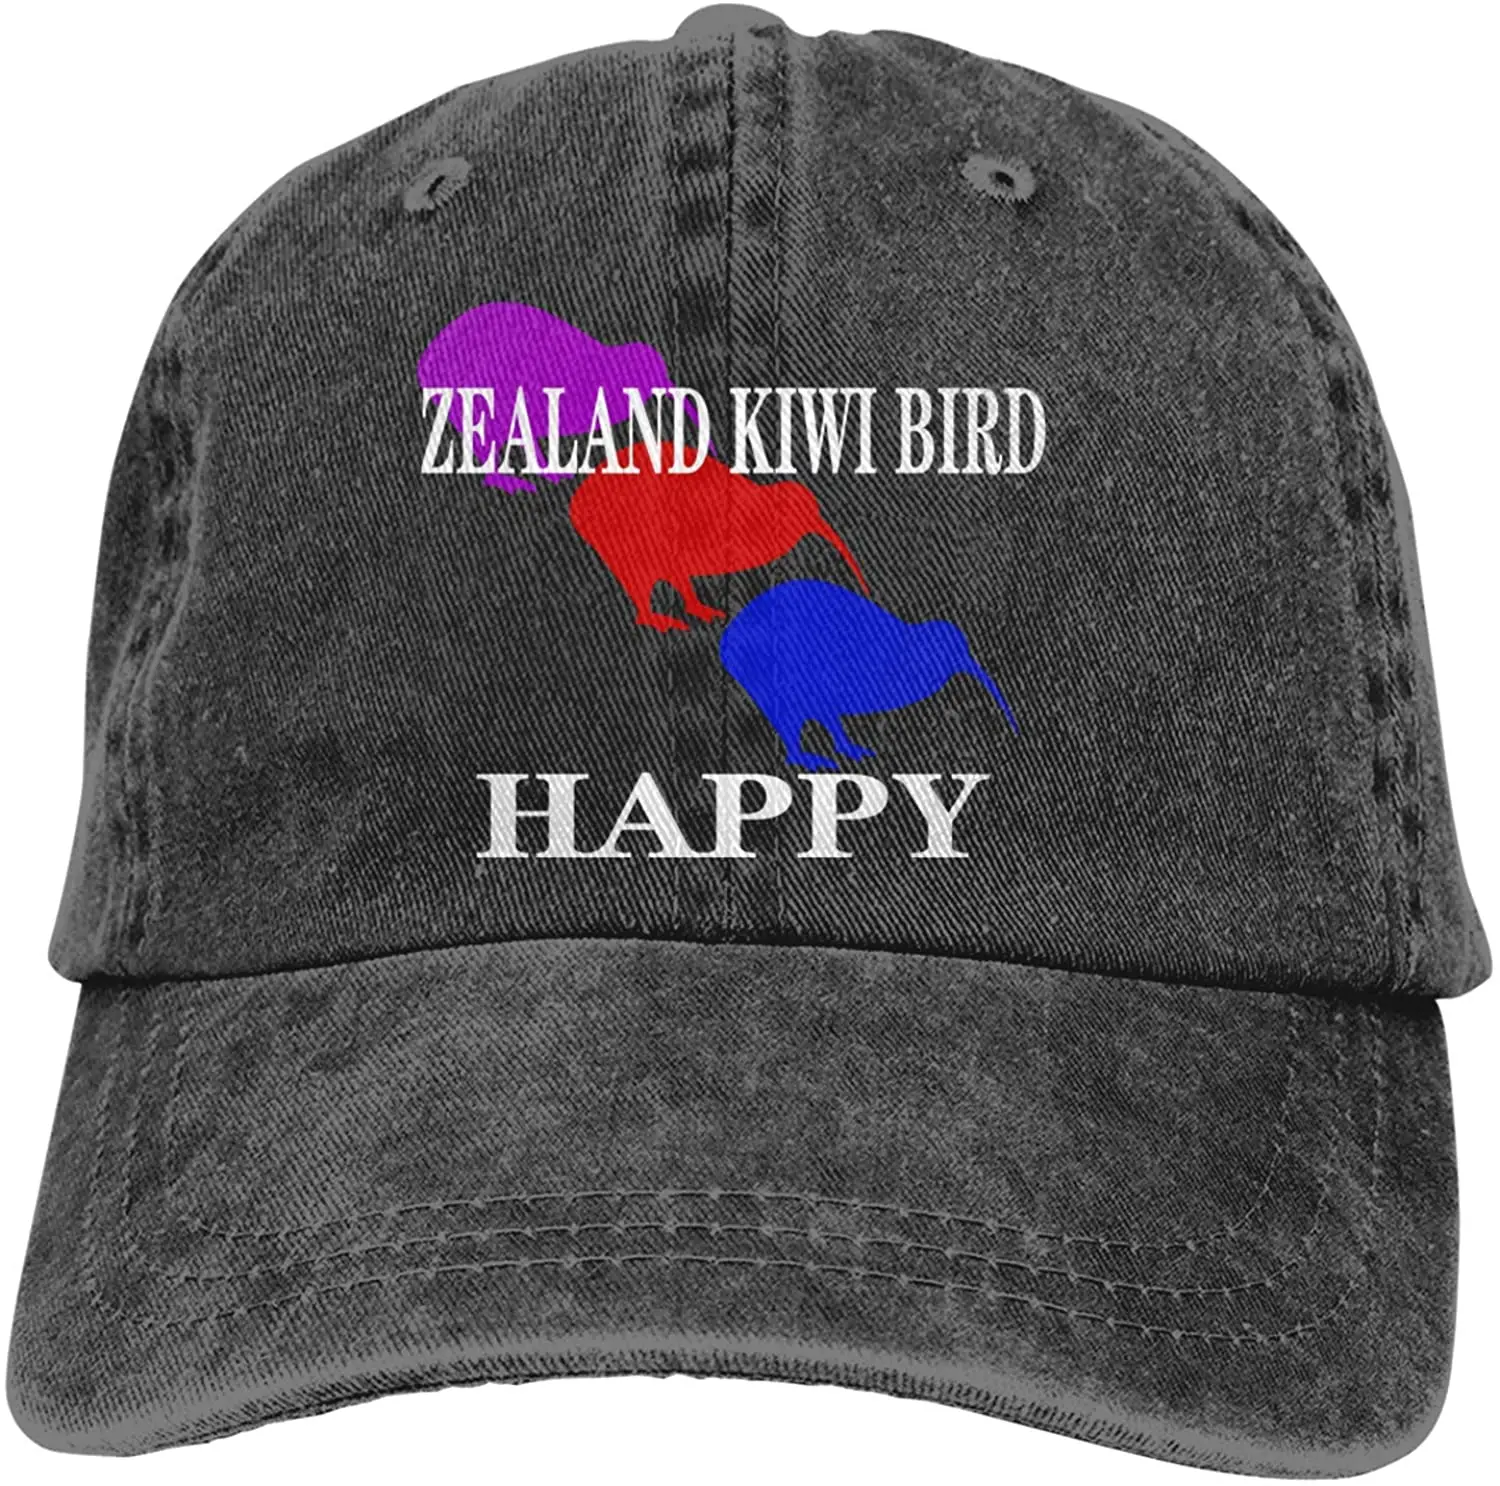 

Zealand Kiwi Bird Makes Me Happy Sports Denim Cap Adjustable Unisex Plain Baseball Cowboy Snapback Hat